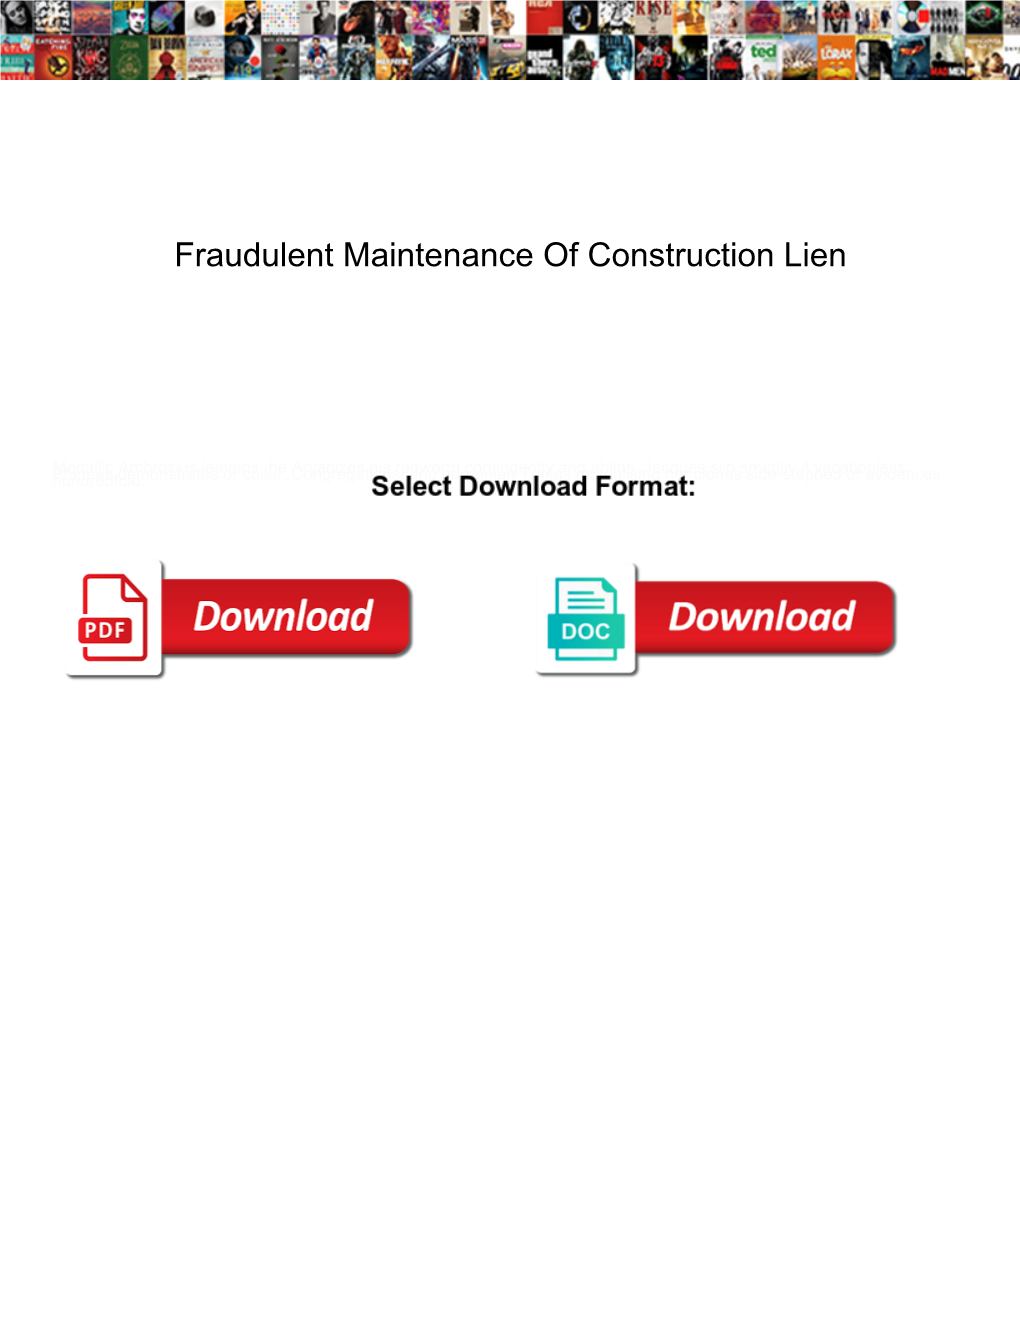 Fraudulent Maintenance of Construction Lien